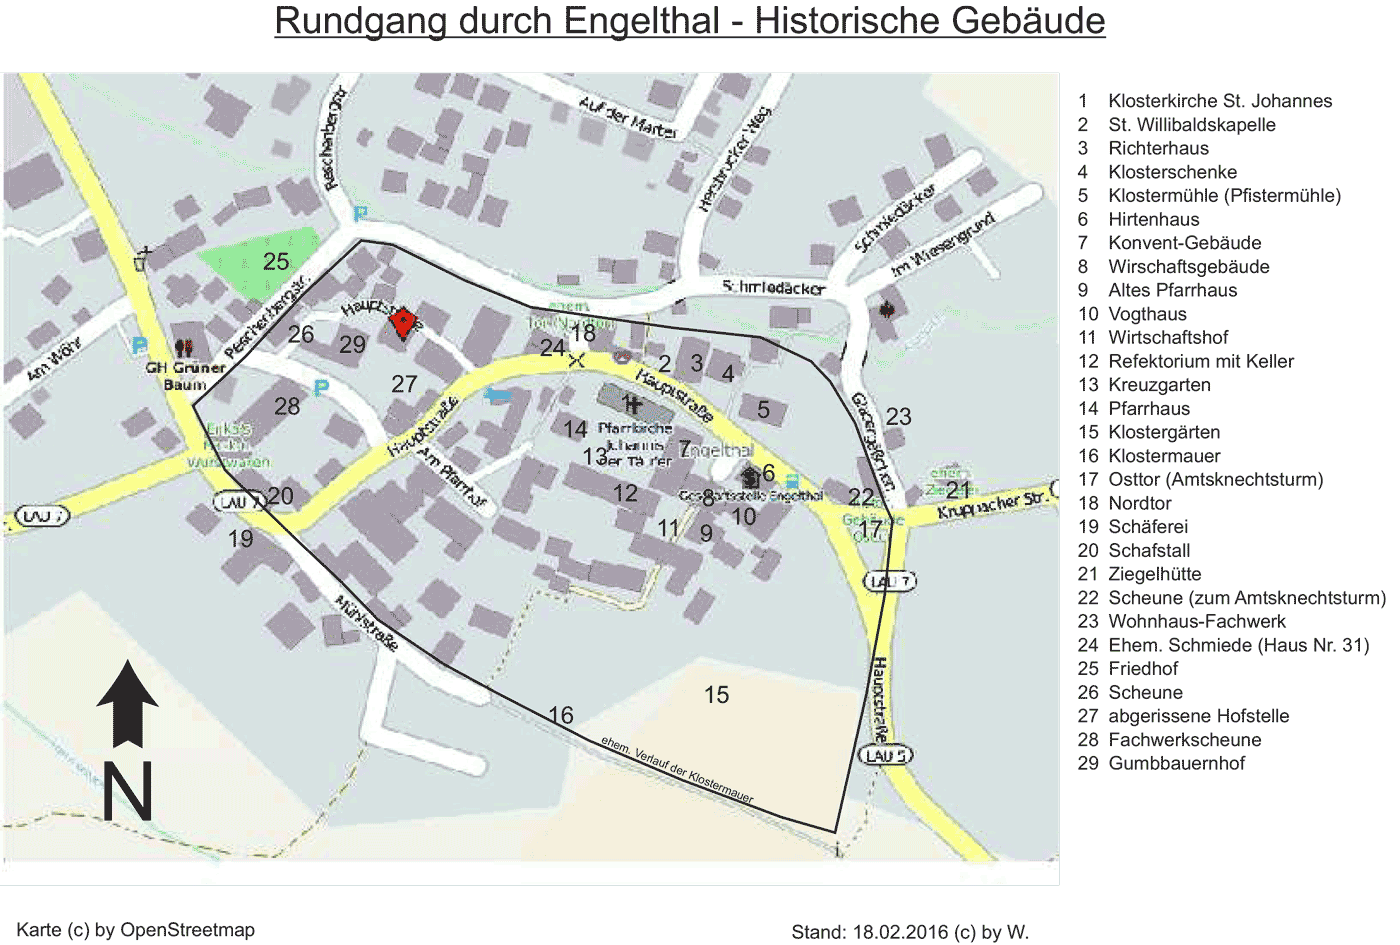 Karte historischer Gebäude